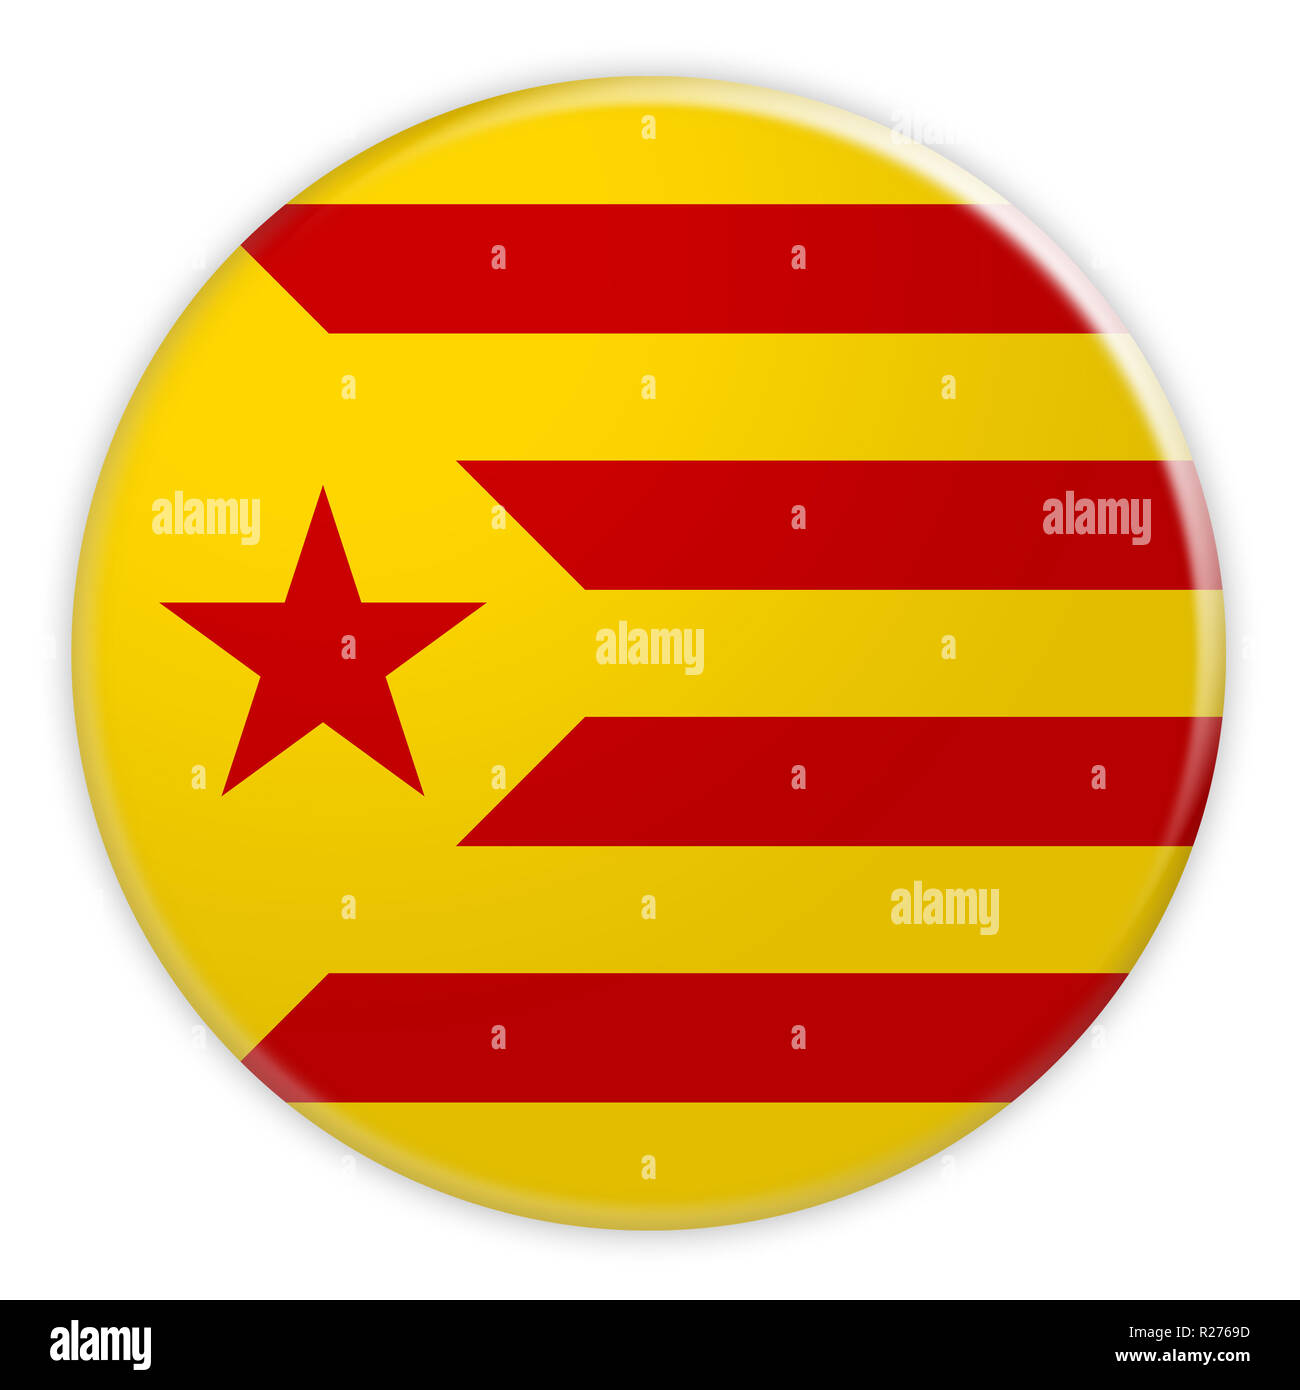 Estelada Groga bouton drapeau catalan, Catalogne Indépendance Actualités Concept d'un insigne, 3d illustration sur fond blanc Banque D'Images